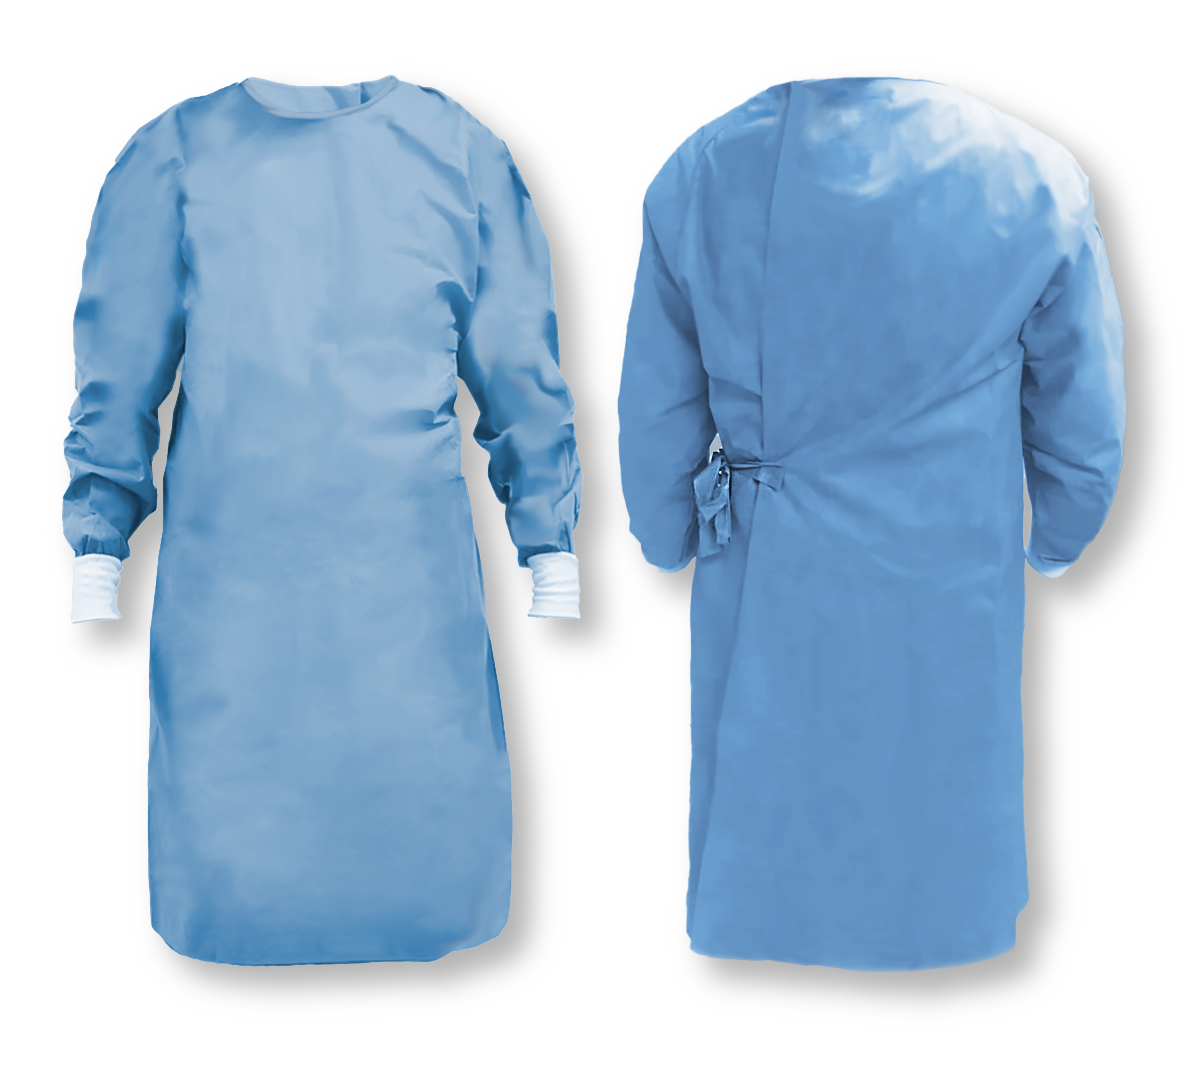 Bata desechable para uso quirúrgico estéril con toalla envueltos en un campo